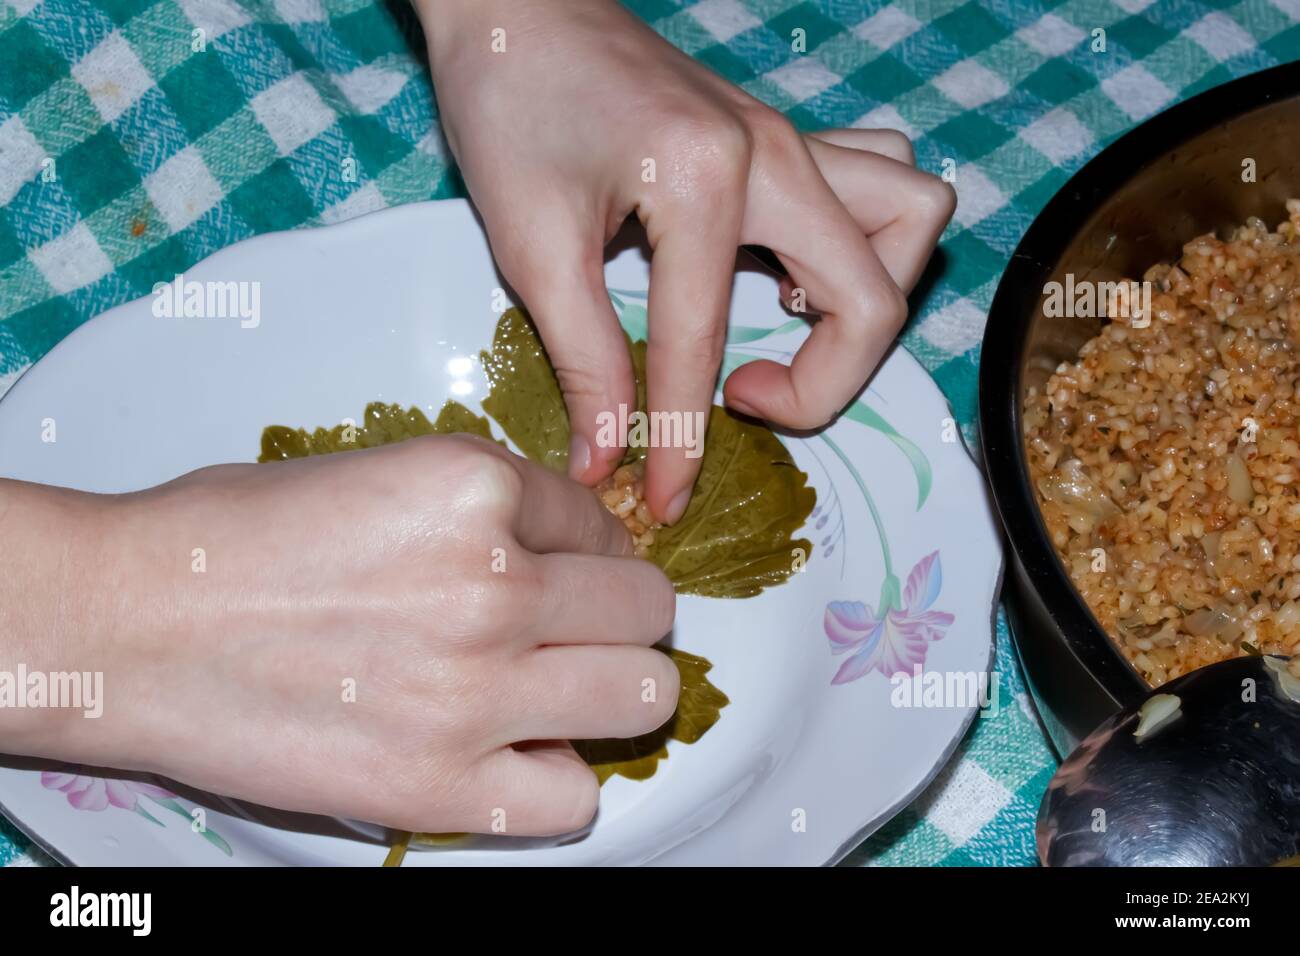 La femme enveloppe des feuilles de raisin pour le Sarma turc ou le Dolma (Yaprak Sarma). Cuisine turque traditionnelle. Concept de cuisine maison. Banque D'Images